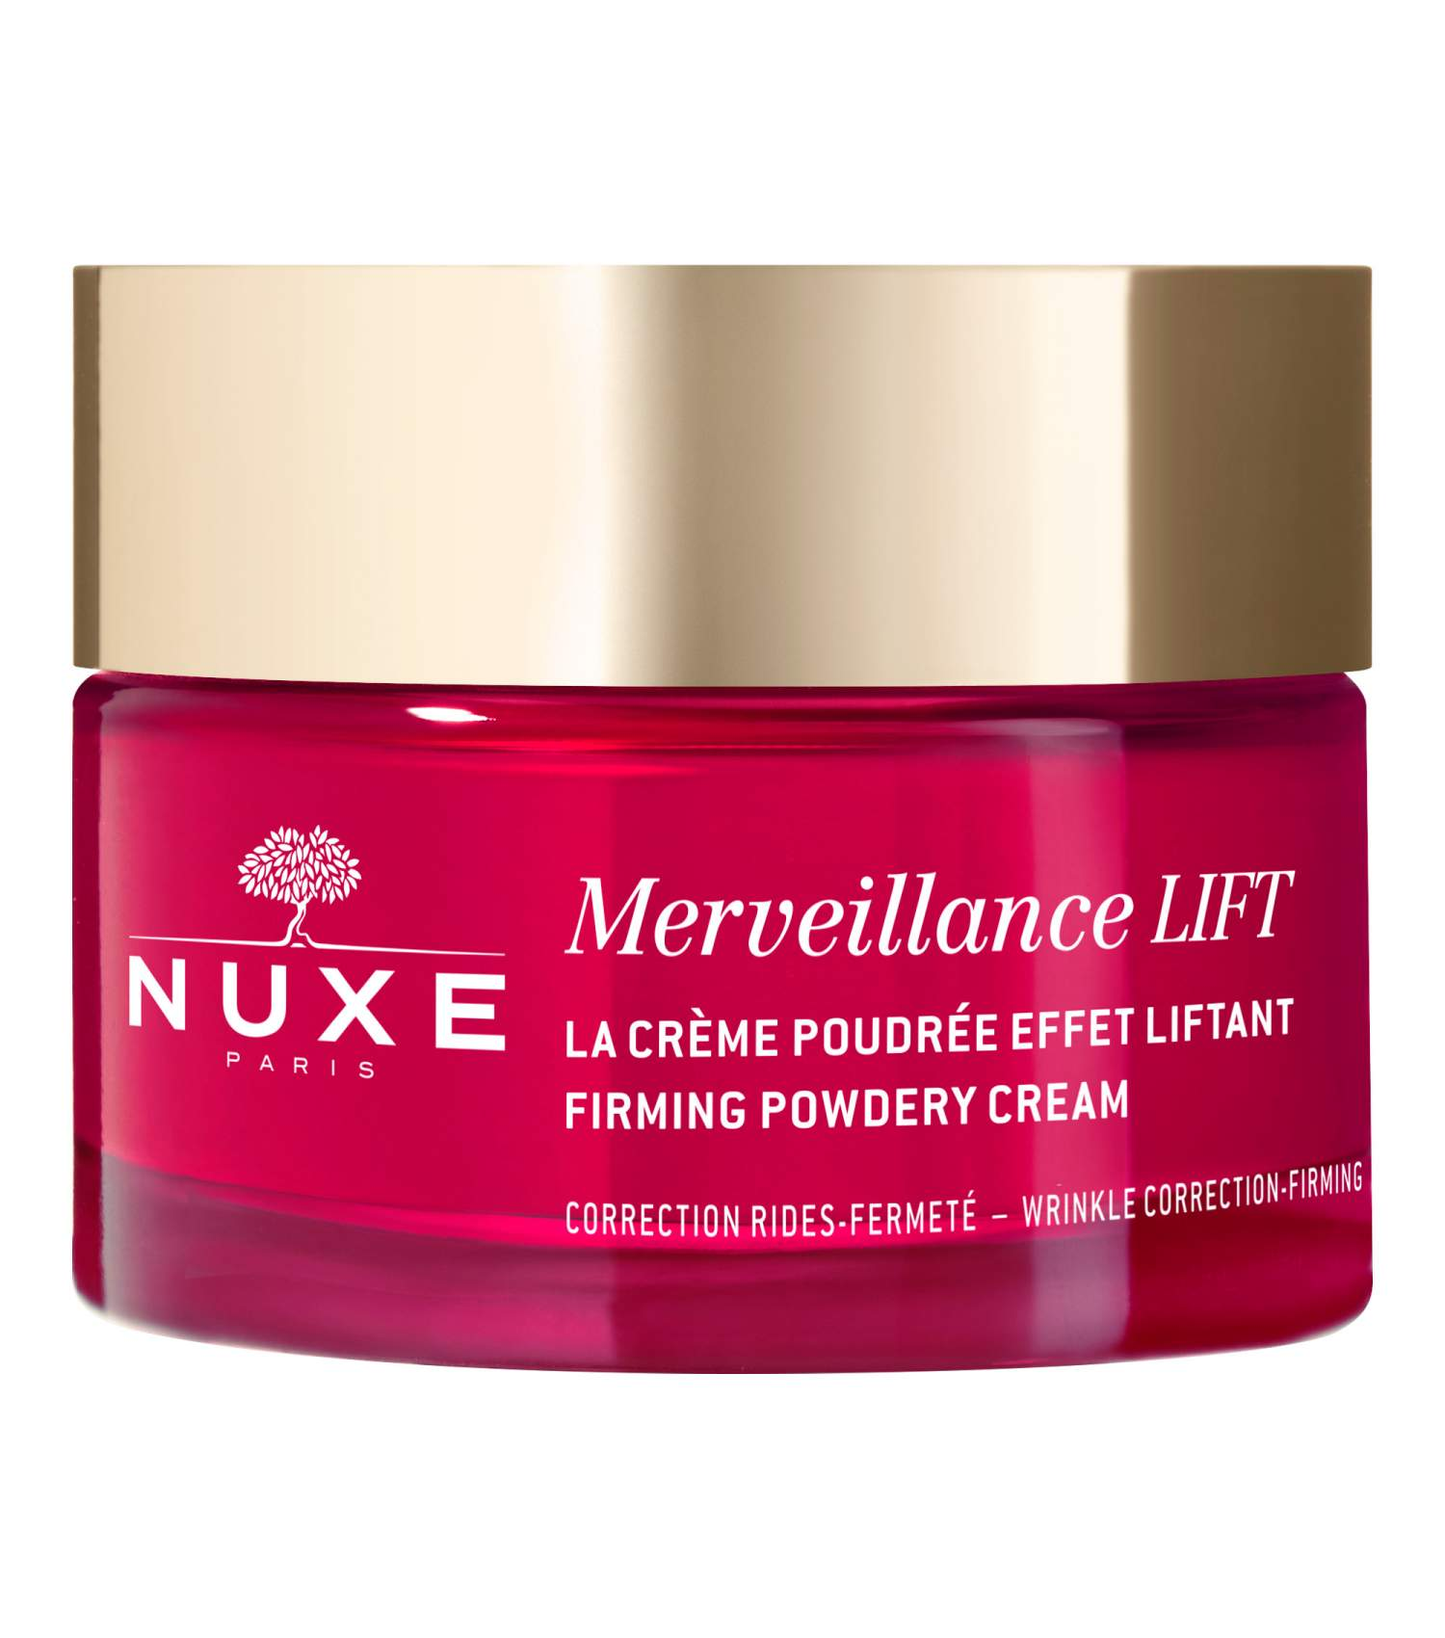 NUXE Merveillance® LIFT Firming Powdery Cream